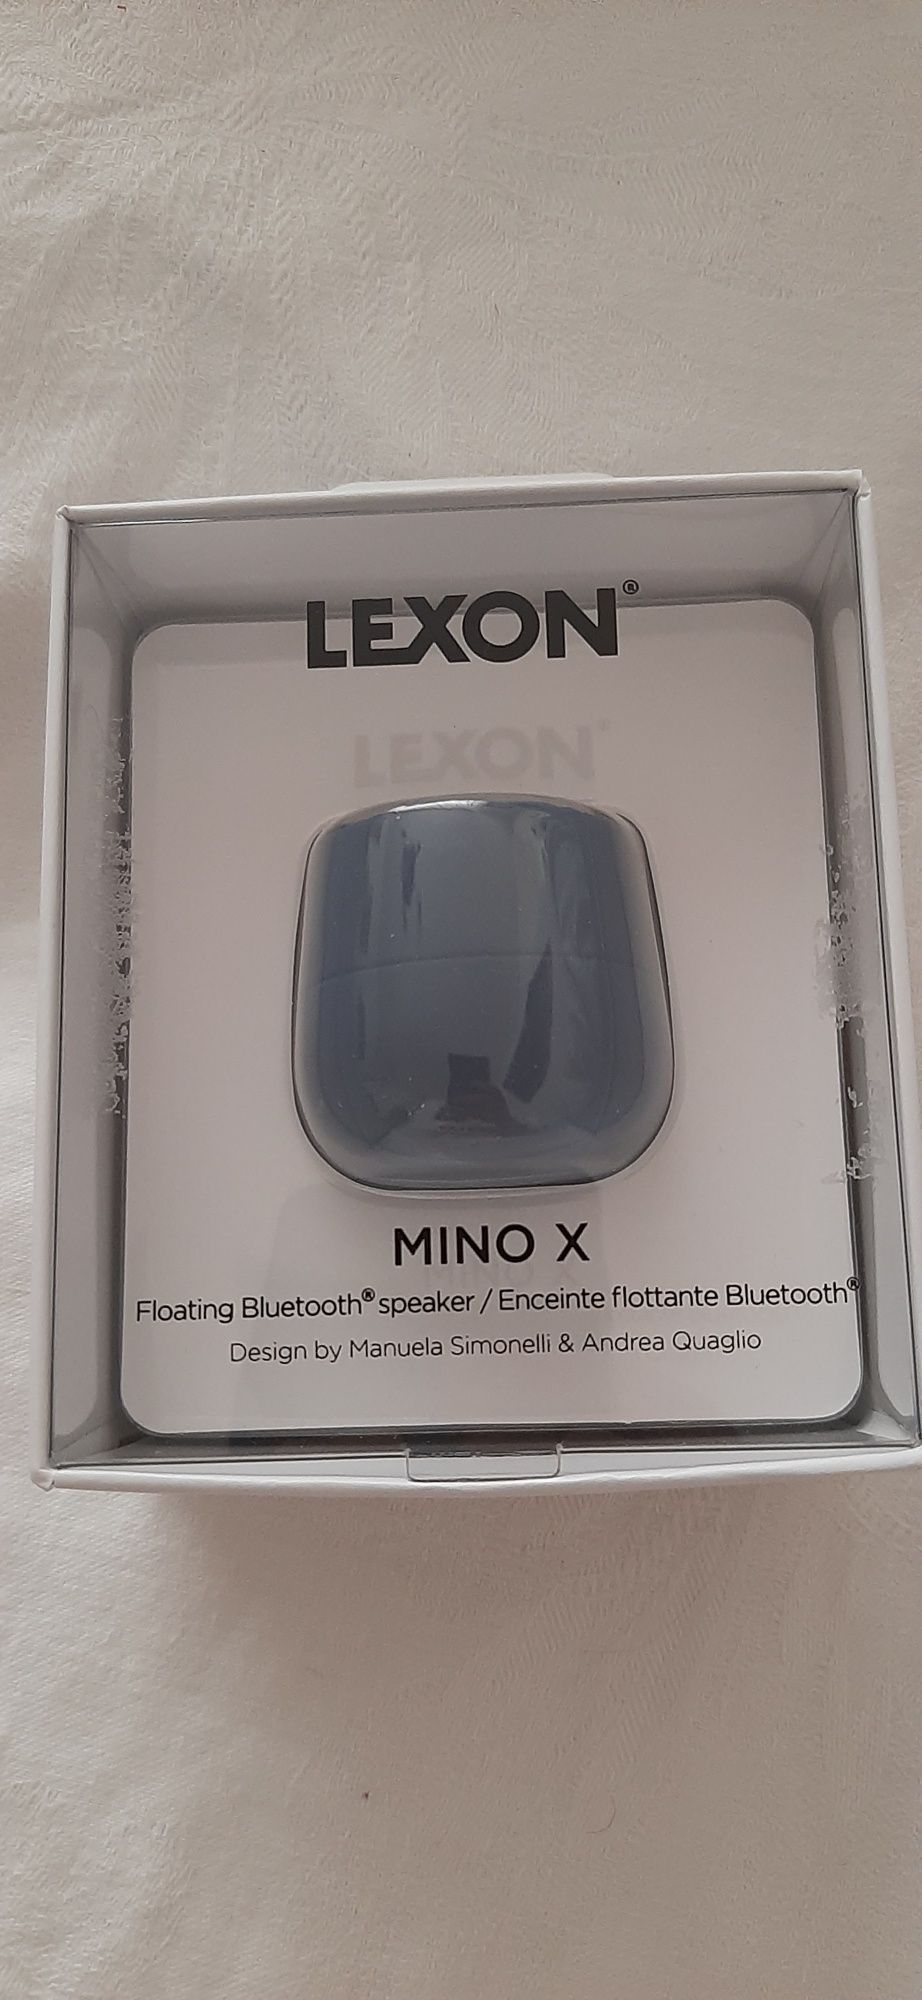 Boxa portabila / plutitoare Lexon Mino X Bluetooth